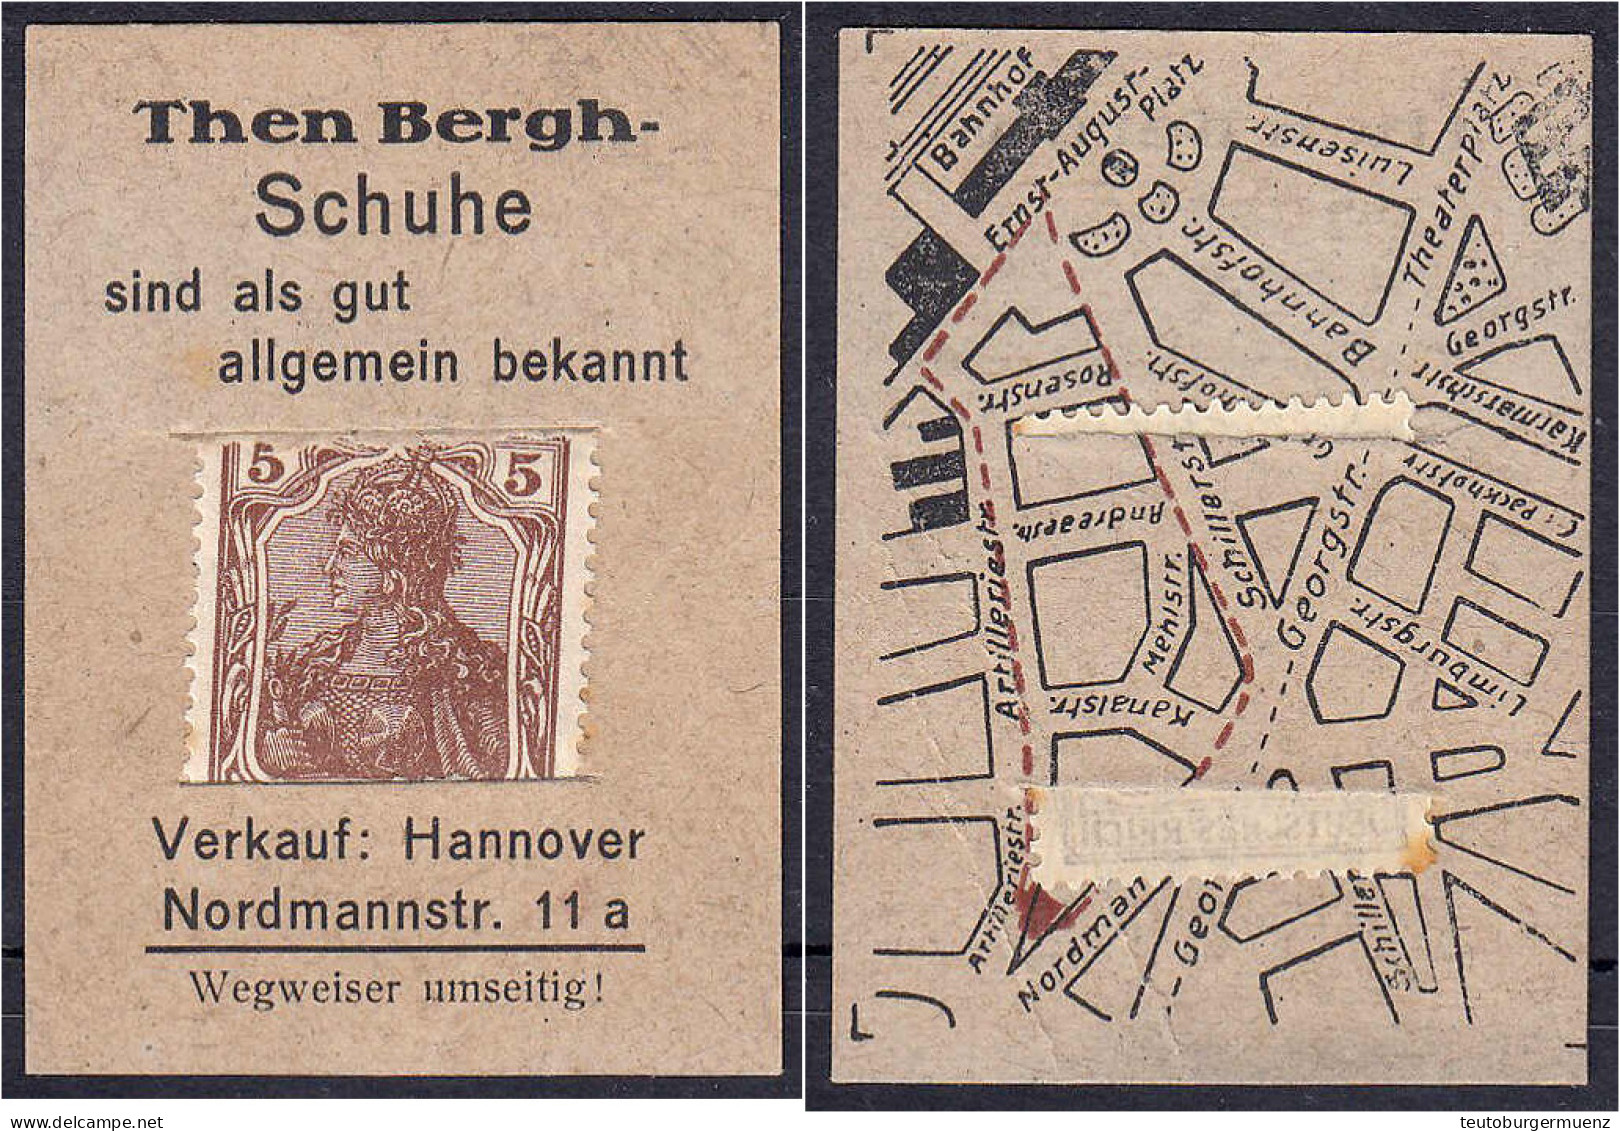 Then Berg - Schuhe, 5 Pfg. O.D. Karton Mit In Schlitze Gesteckter Briefmarke. II. Tieste 2795.65.01. - Lokale Ausgaben